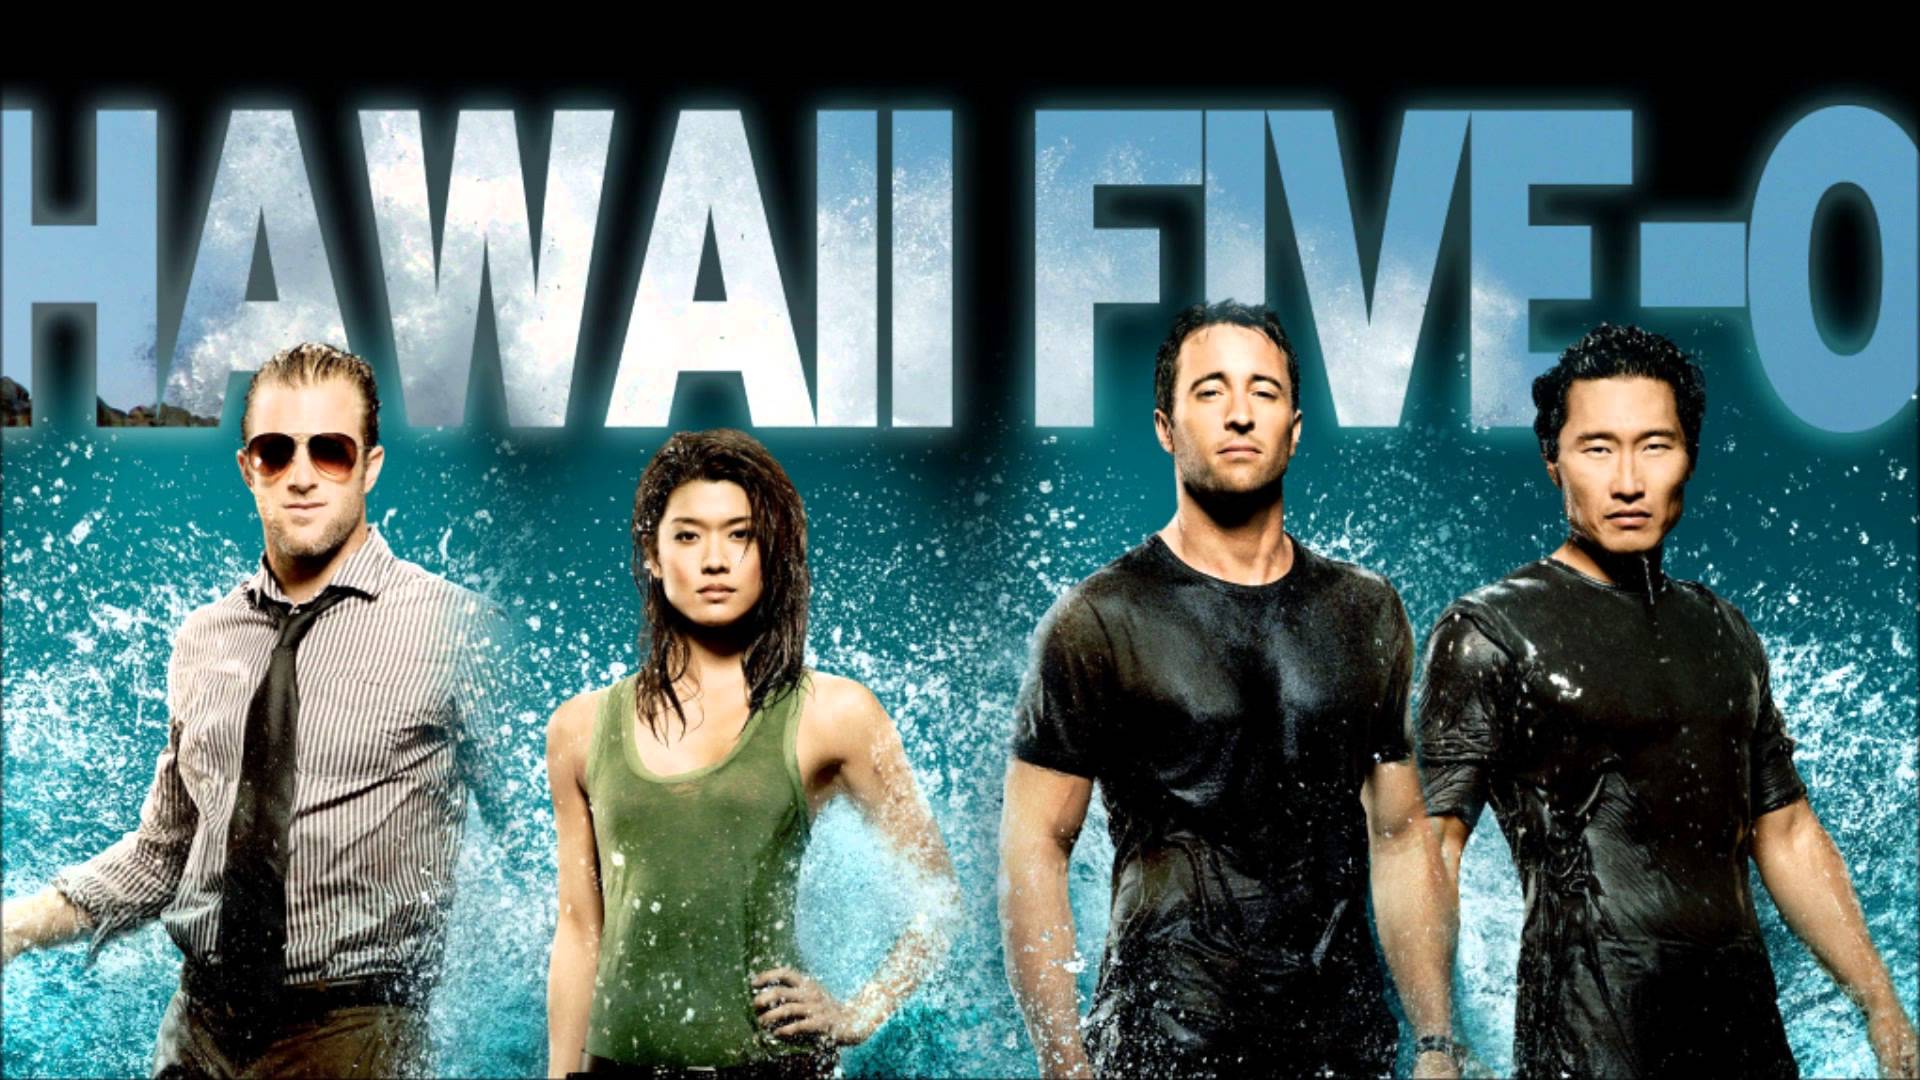 When Does Hawaii Five-0 Season 8 Start? Premiere Date